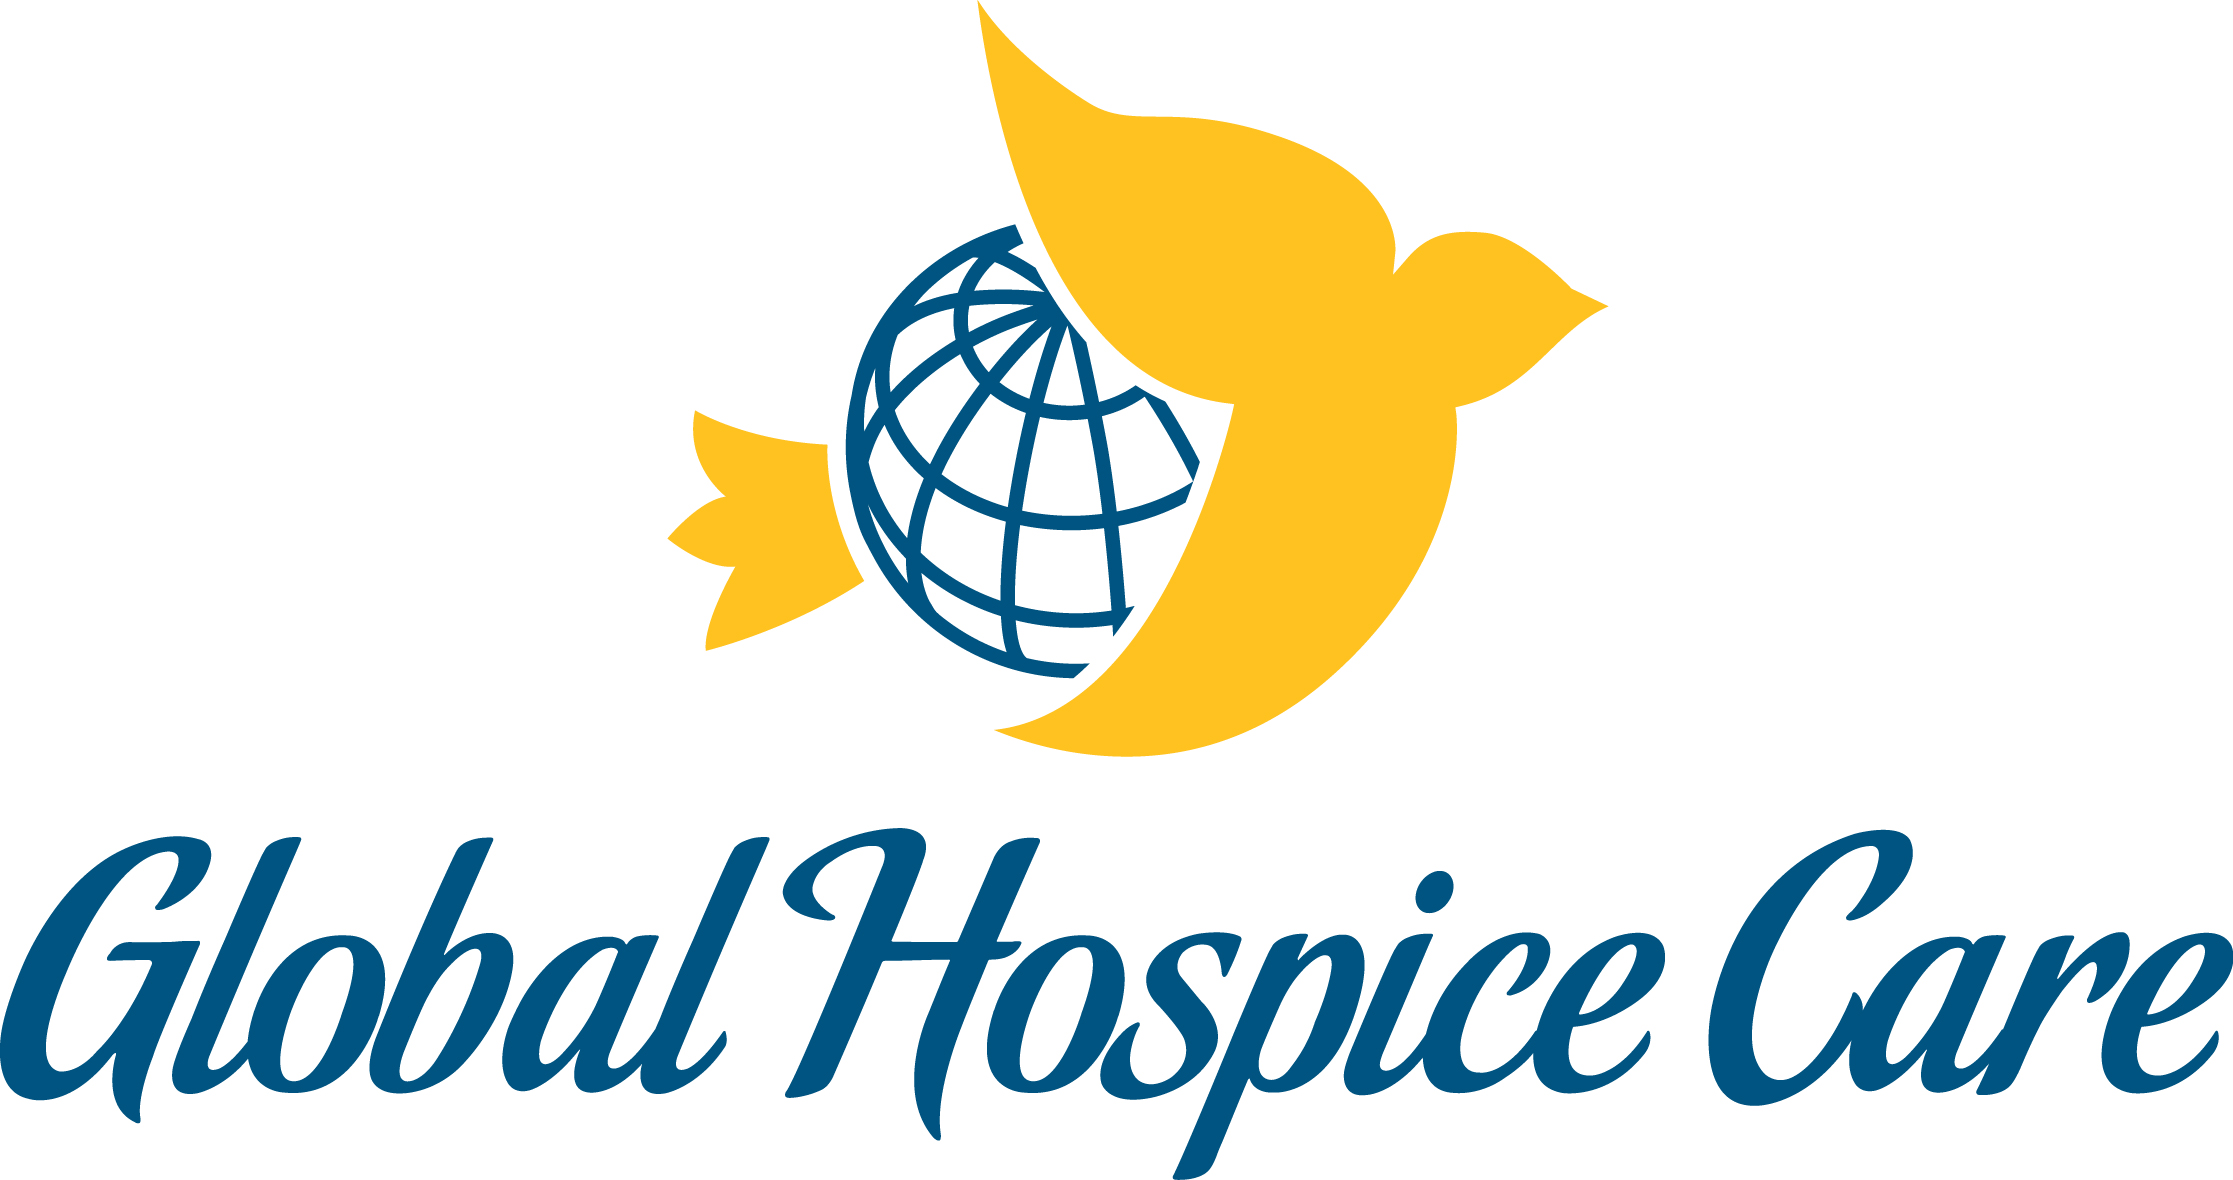 Global Hospice Care Logo, 2016 Spectrum Award Winner